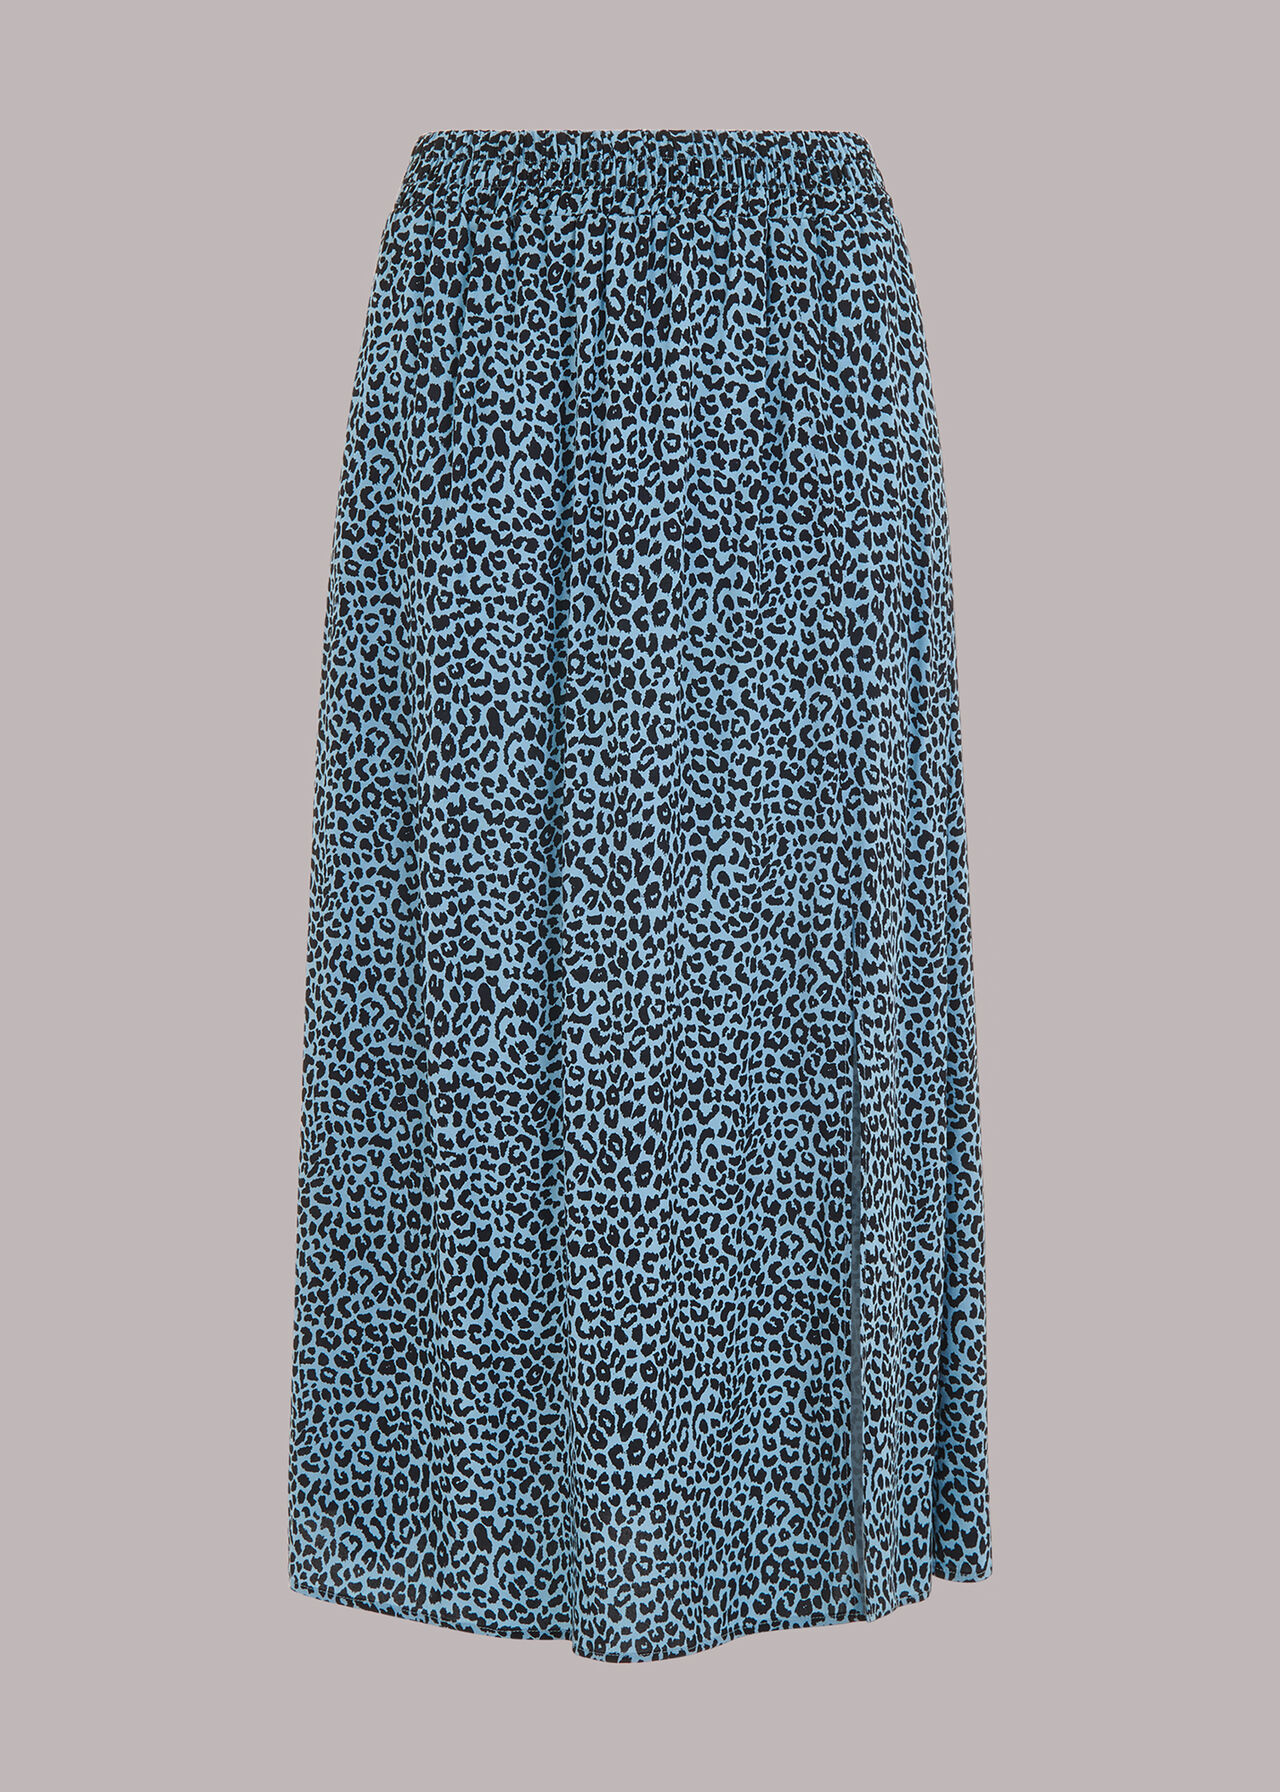 Contrast Leopard Skirt